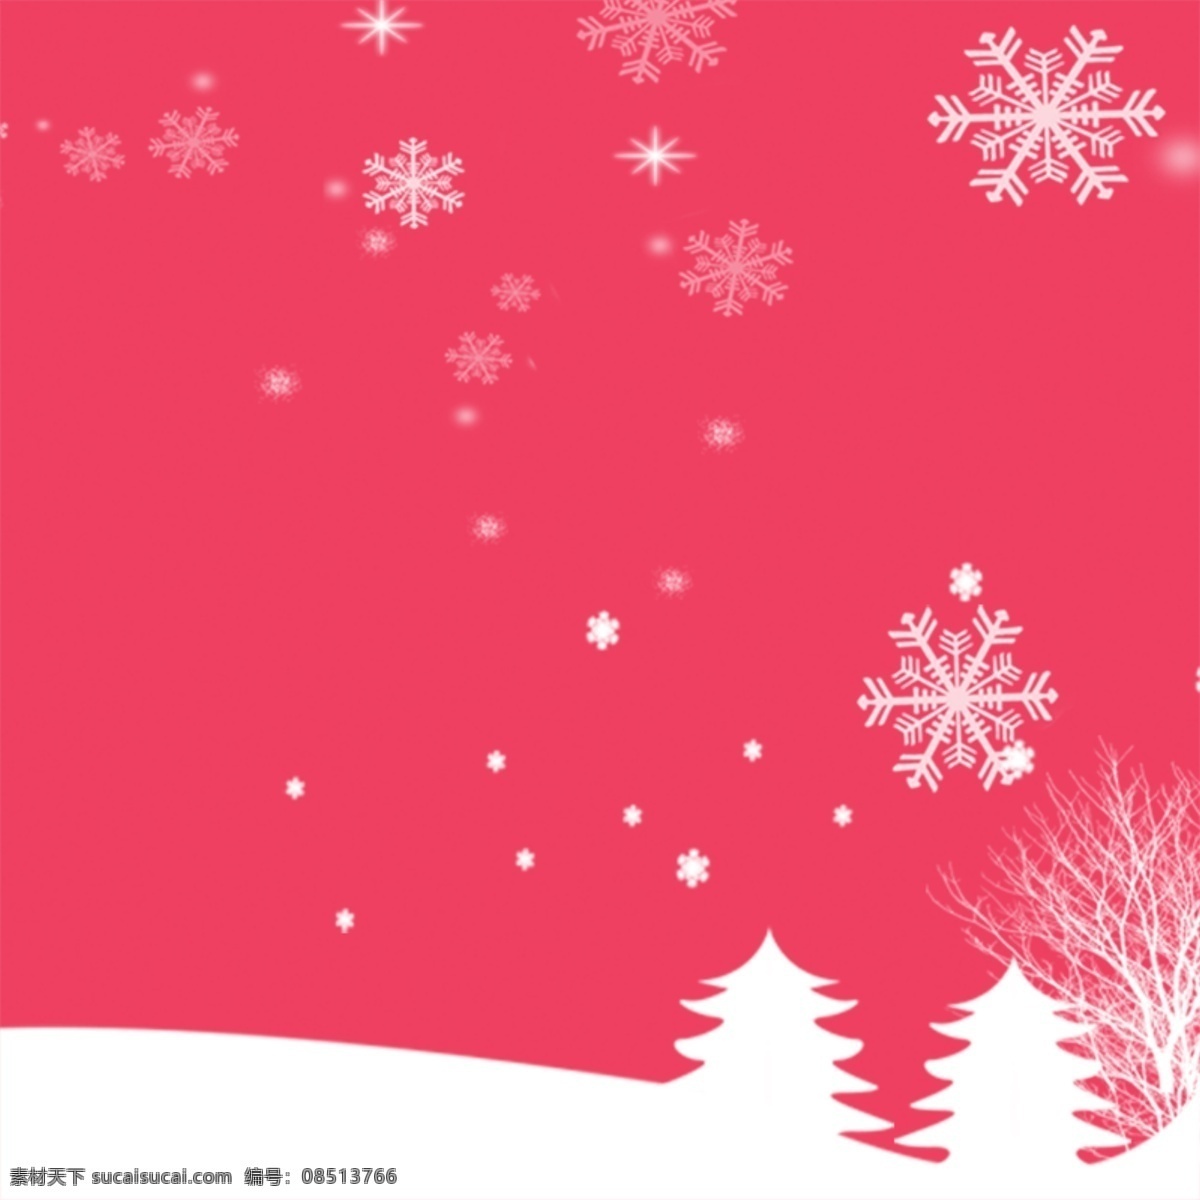 冬季背景 冬季插画 冬天 广告设计模板 源文件 冬季 氛围 模板下载 冬季氛围 写意背景 粉色